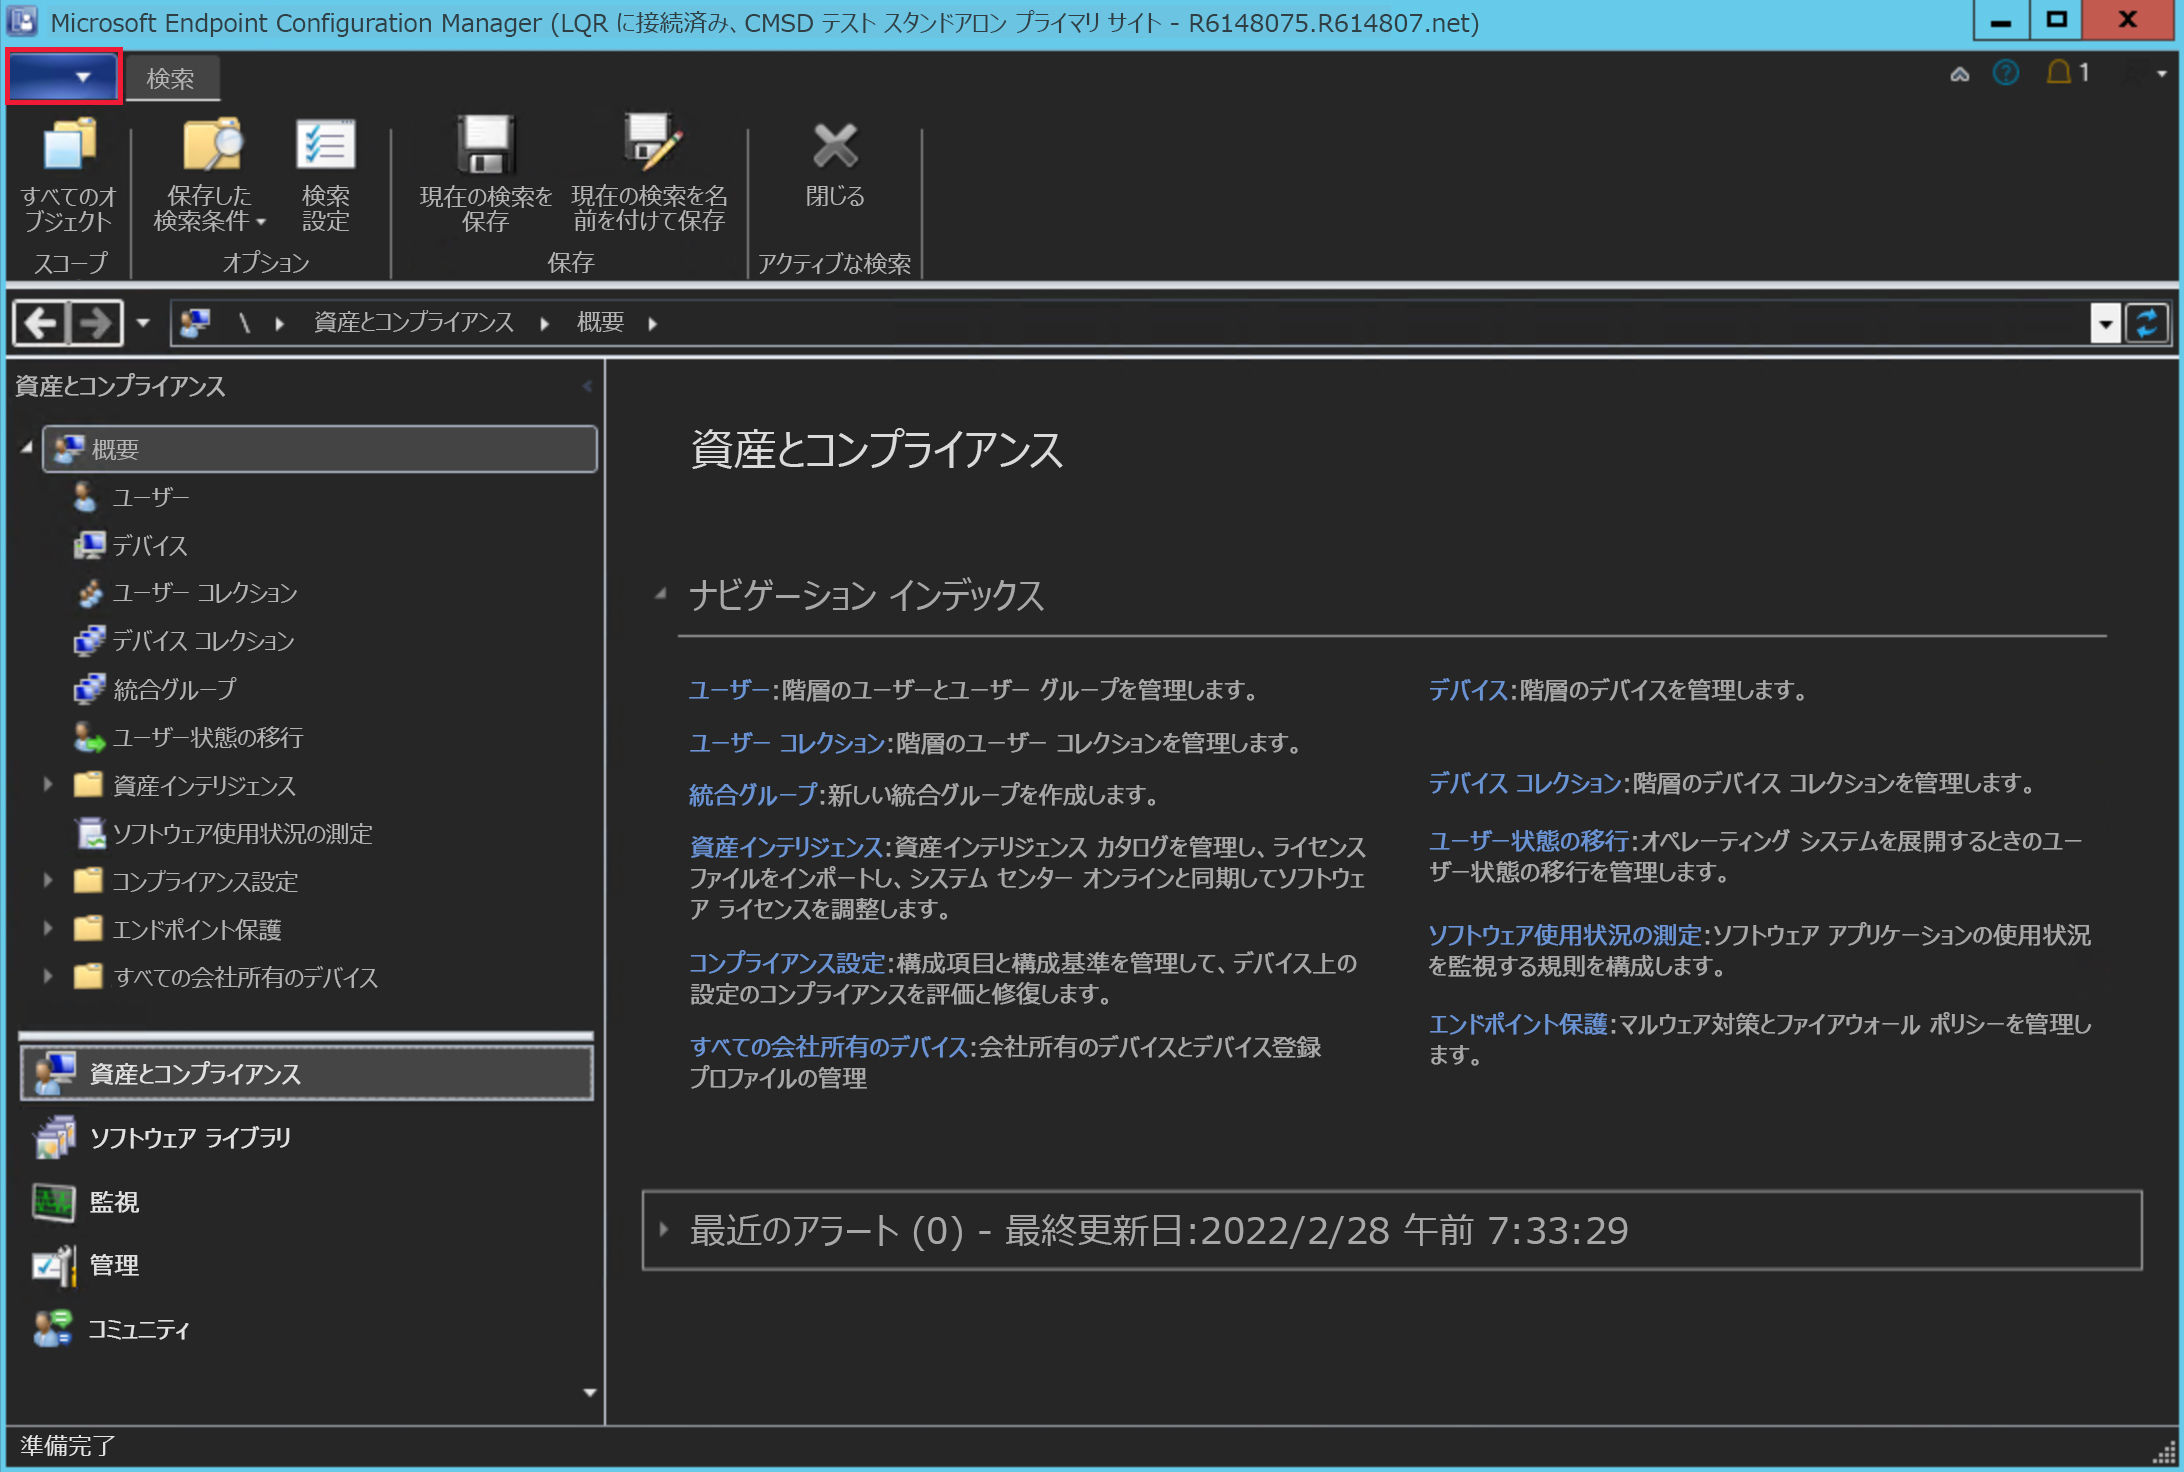 コンソールのダーク テーマを使用したConfiguration Managerのスクリーンショット。[コンソール テーマの切り替え] オプションが画像の右上隅に表示されます。